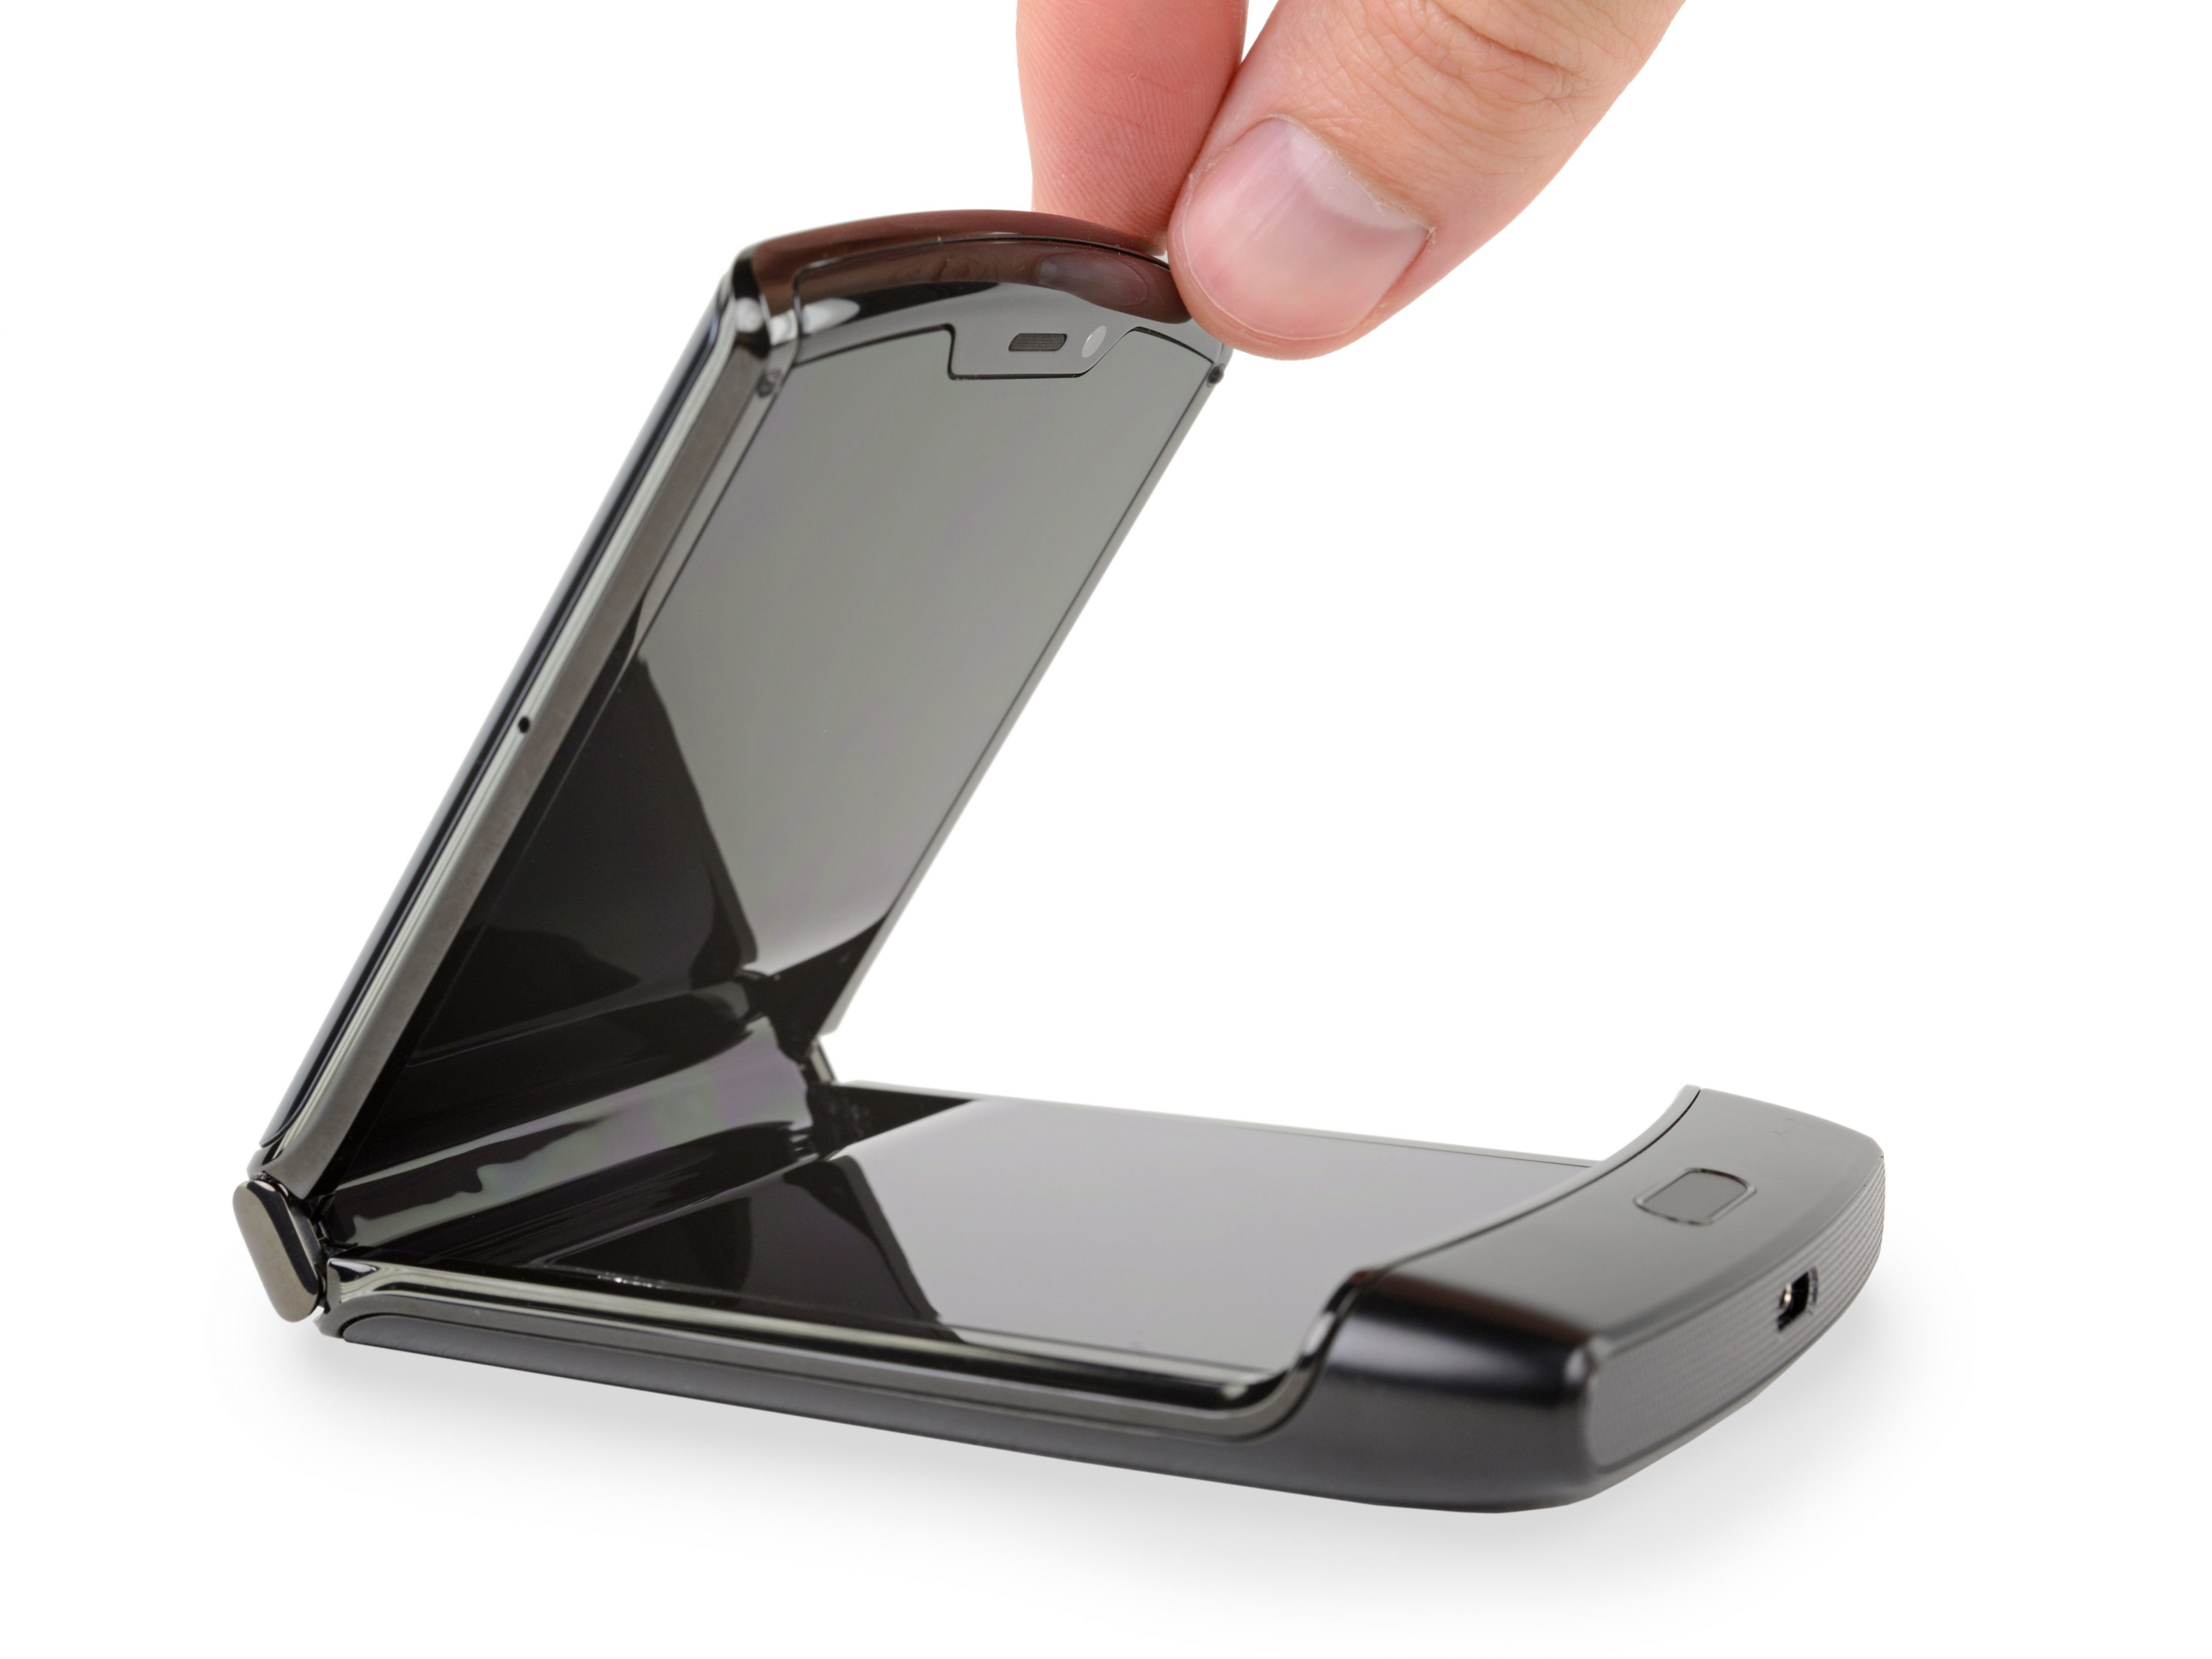 Tháo tung Motorola Razr cùng iFixit: một trong những chiếc điện thoại phức tạp nhất!